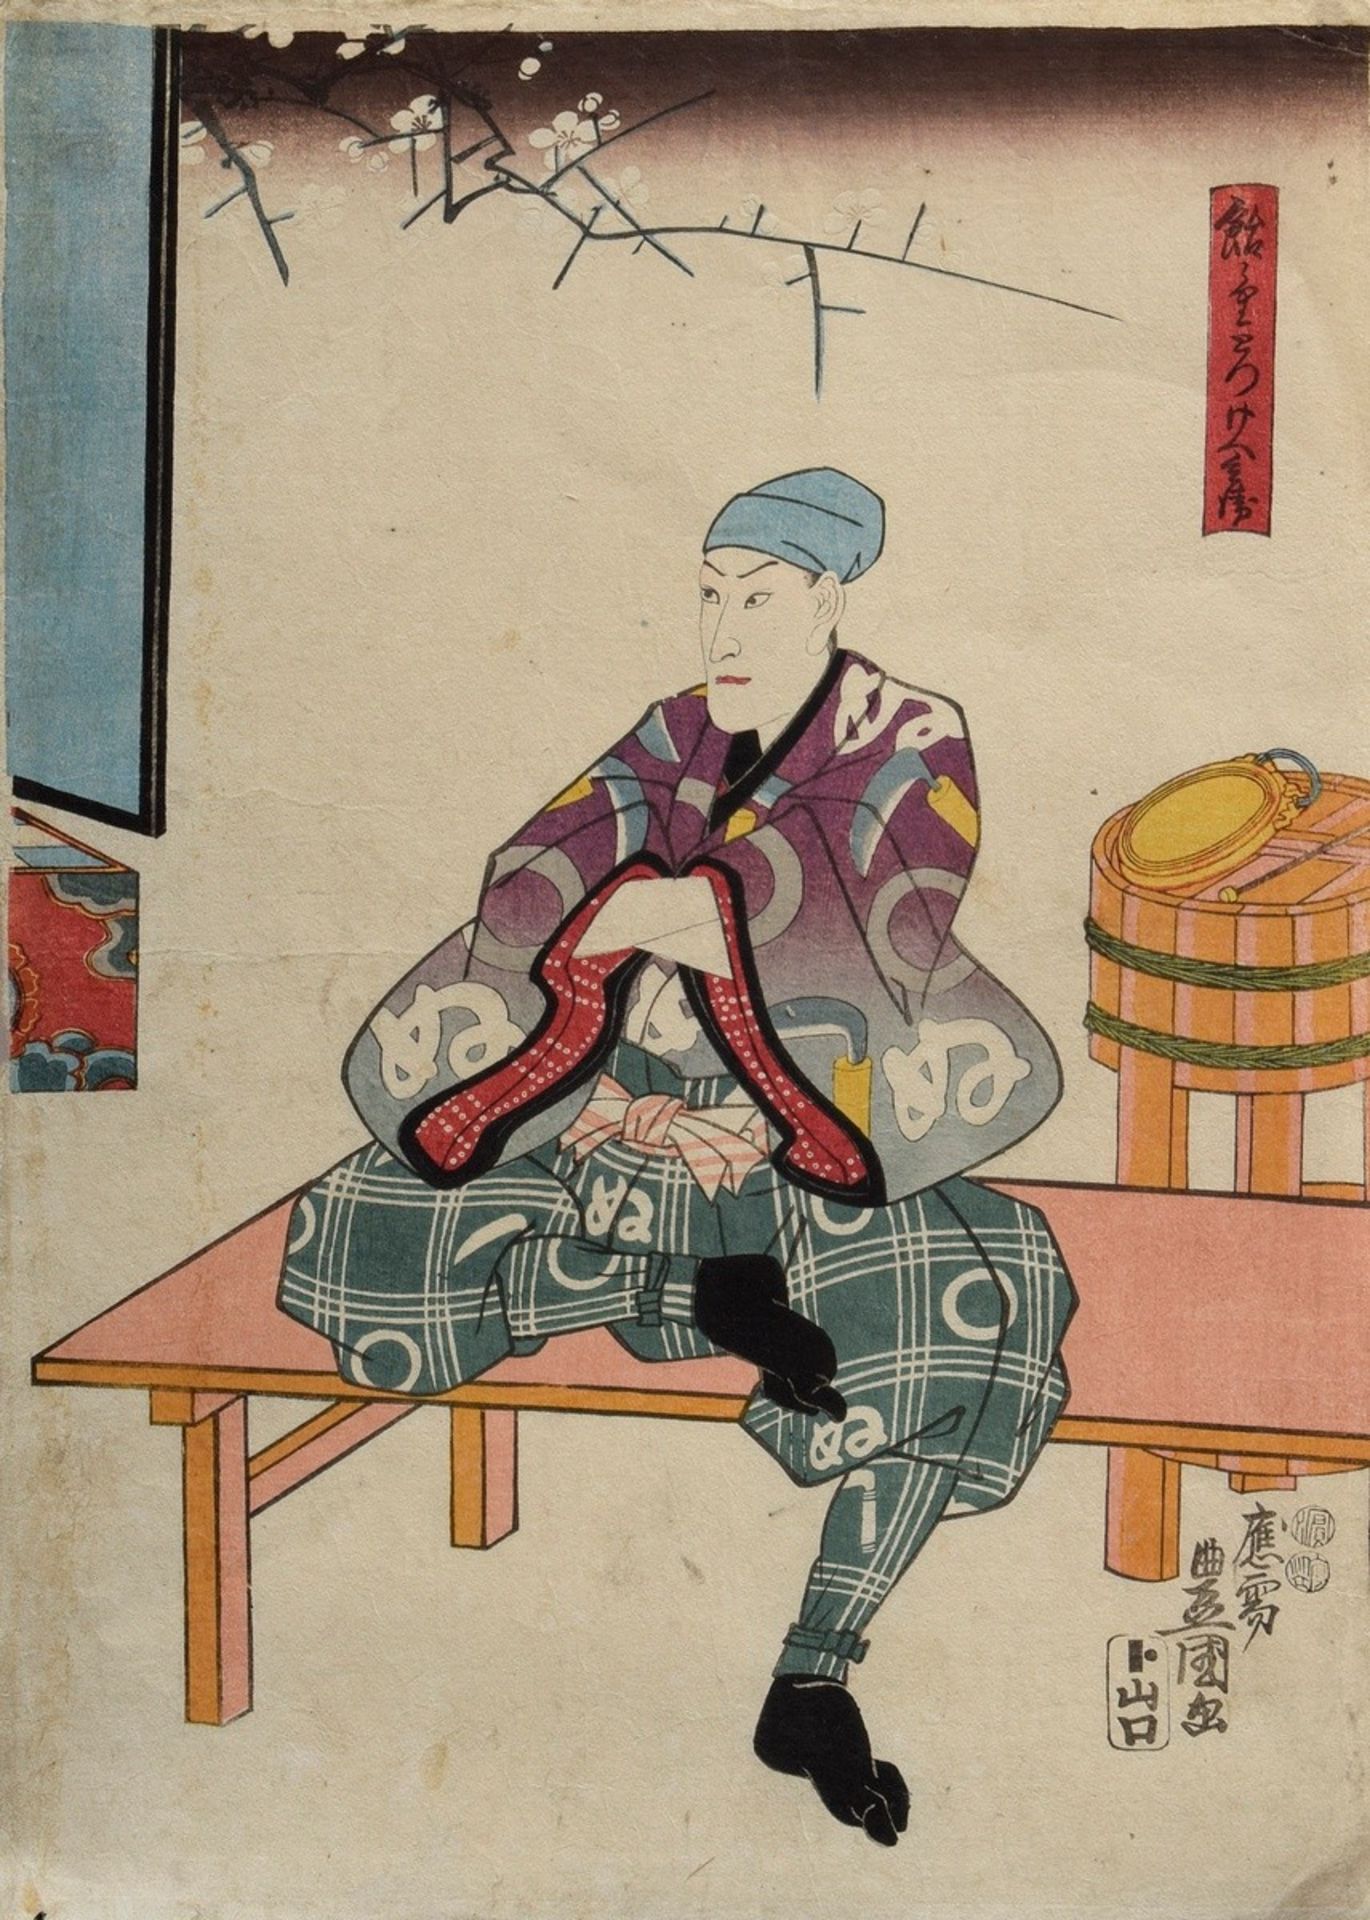 Japanischer Farbholzschnitt "Mann auf Sitzbank" | Japanese woodblock print "Man on bench" Kunisada